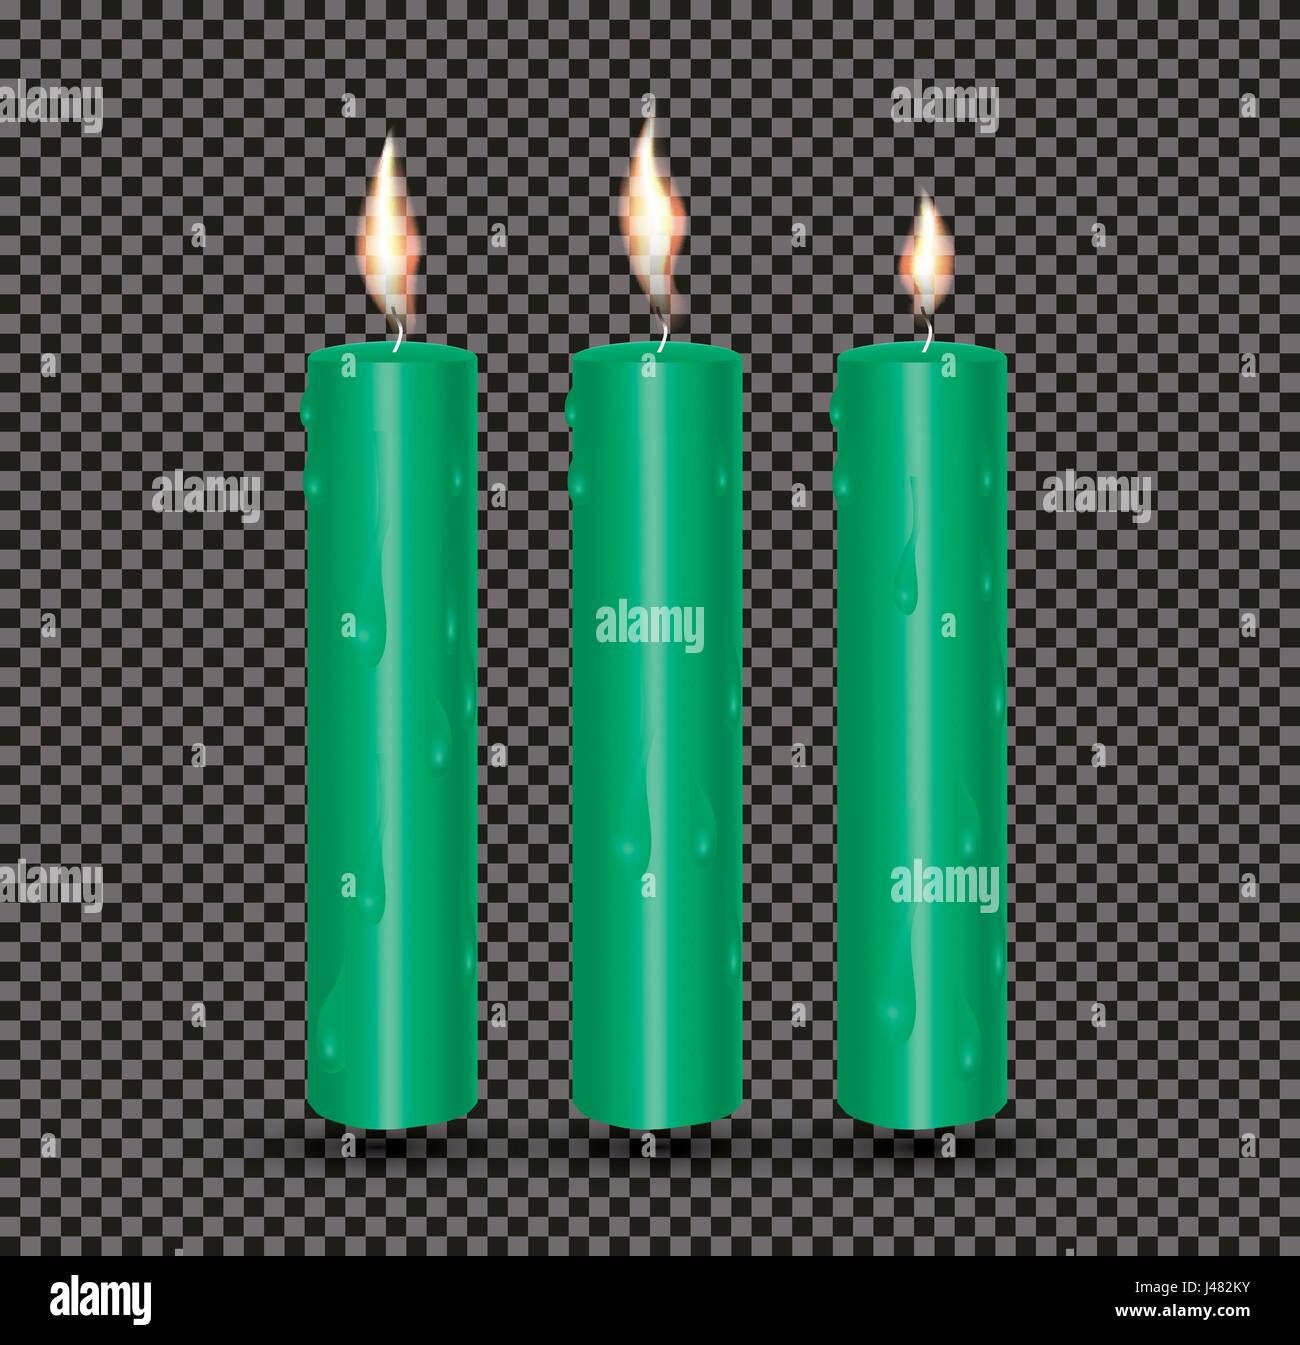 Realistische grün leuchtenden Kerzen mit geschmolzenem Wachs. Vektor-Illustration Stock Vektor